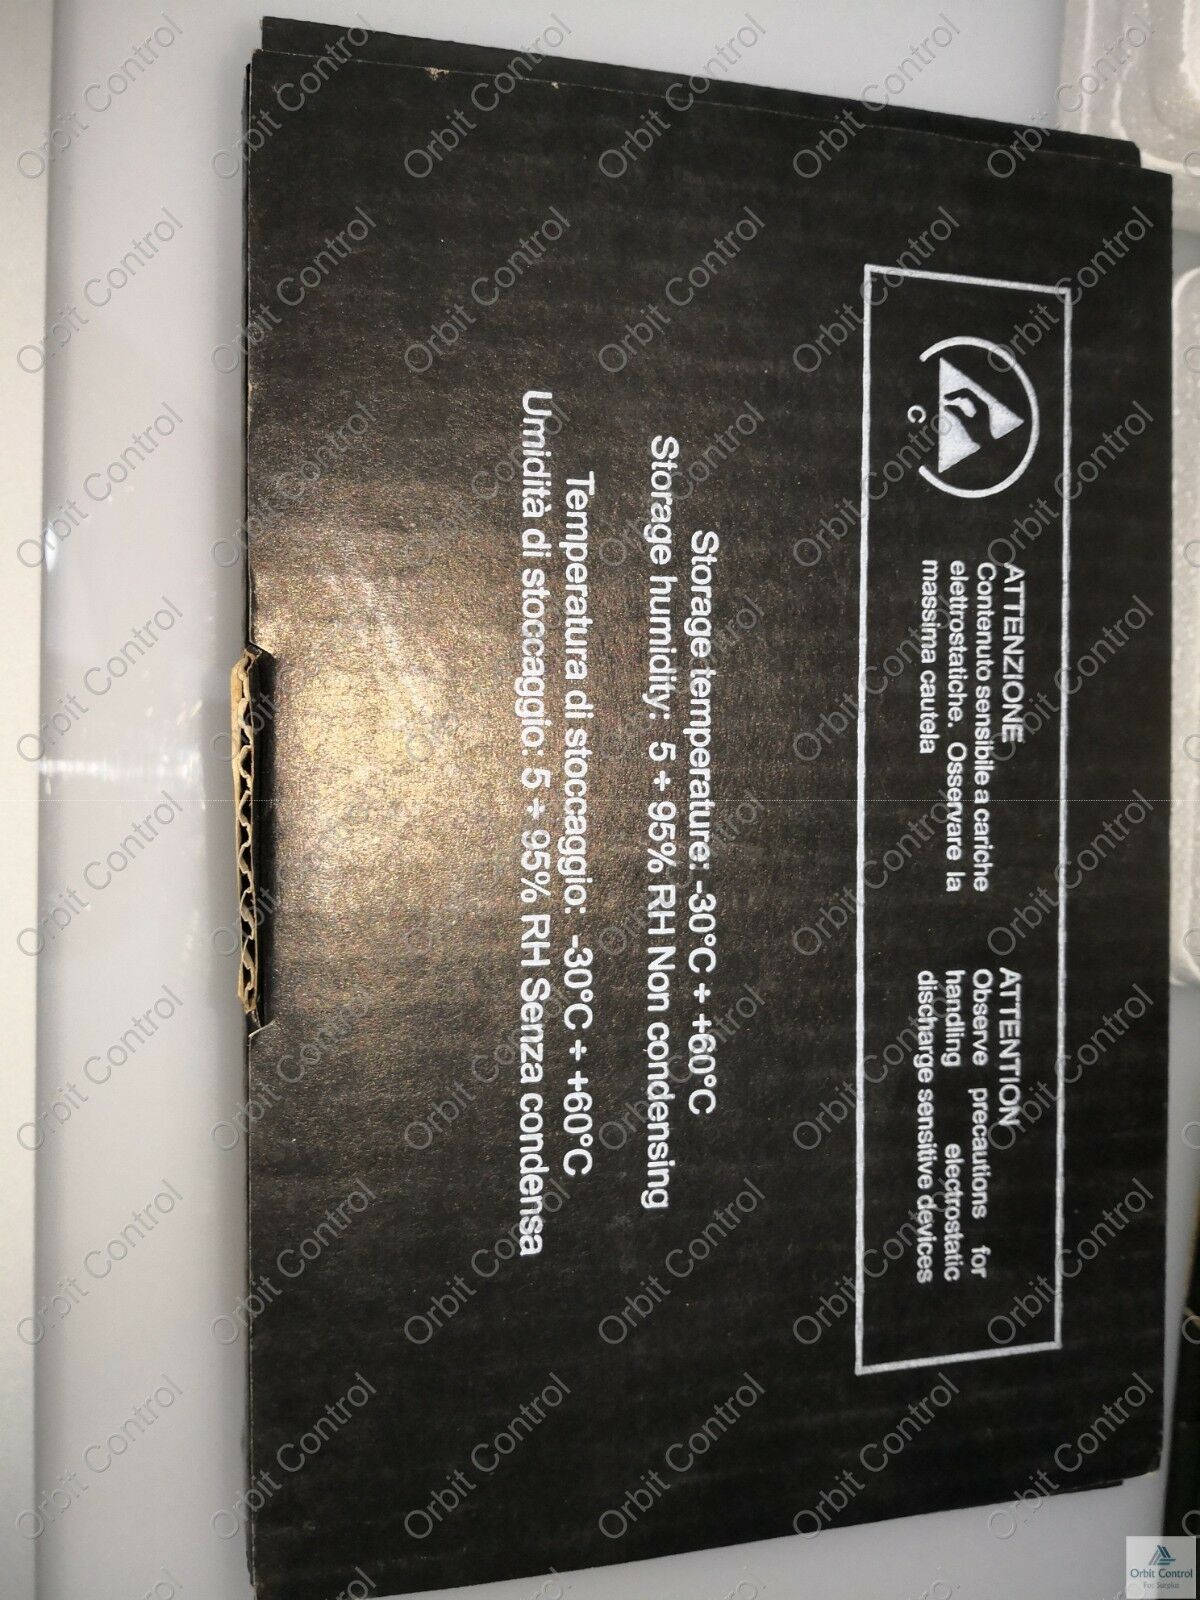 NEW  SCAME SISTEMI MODEL CARD  S81-F3002-1 